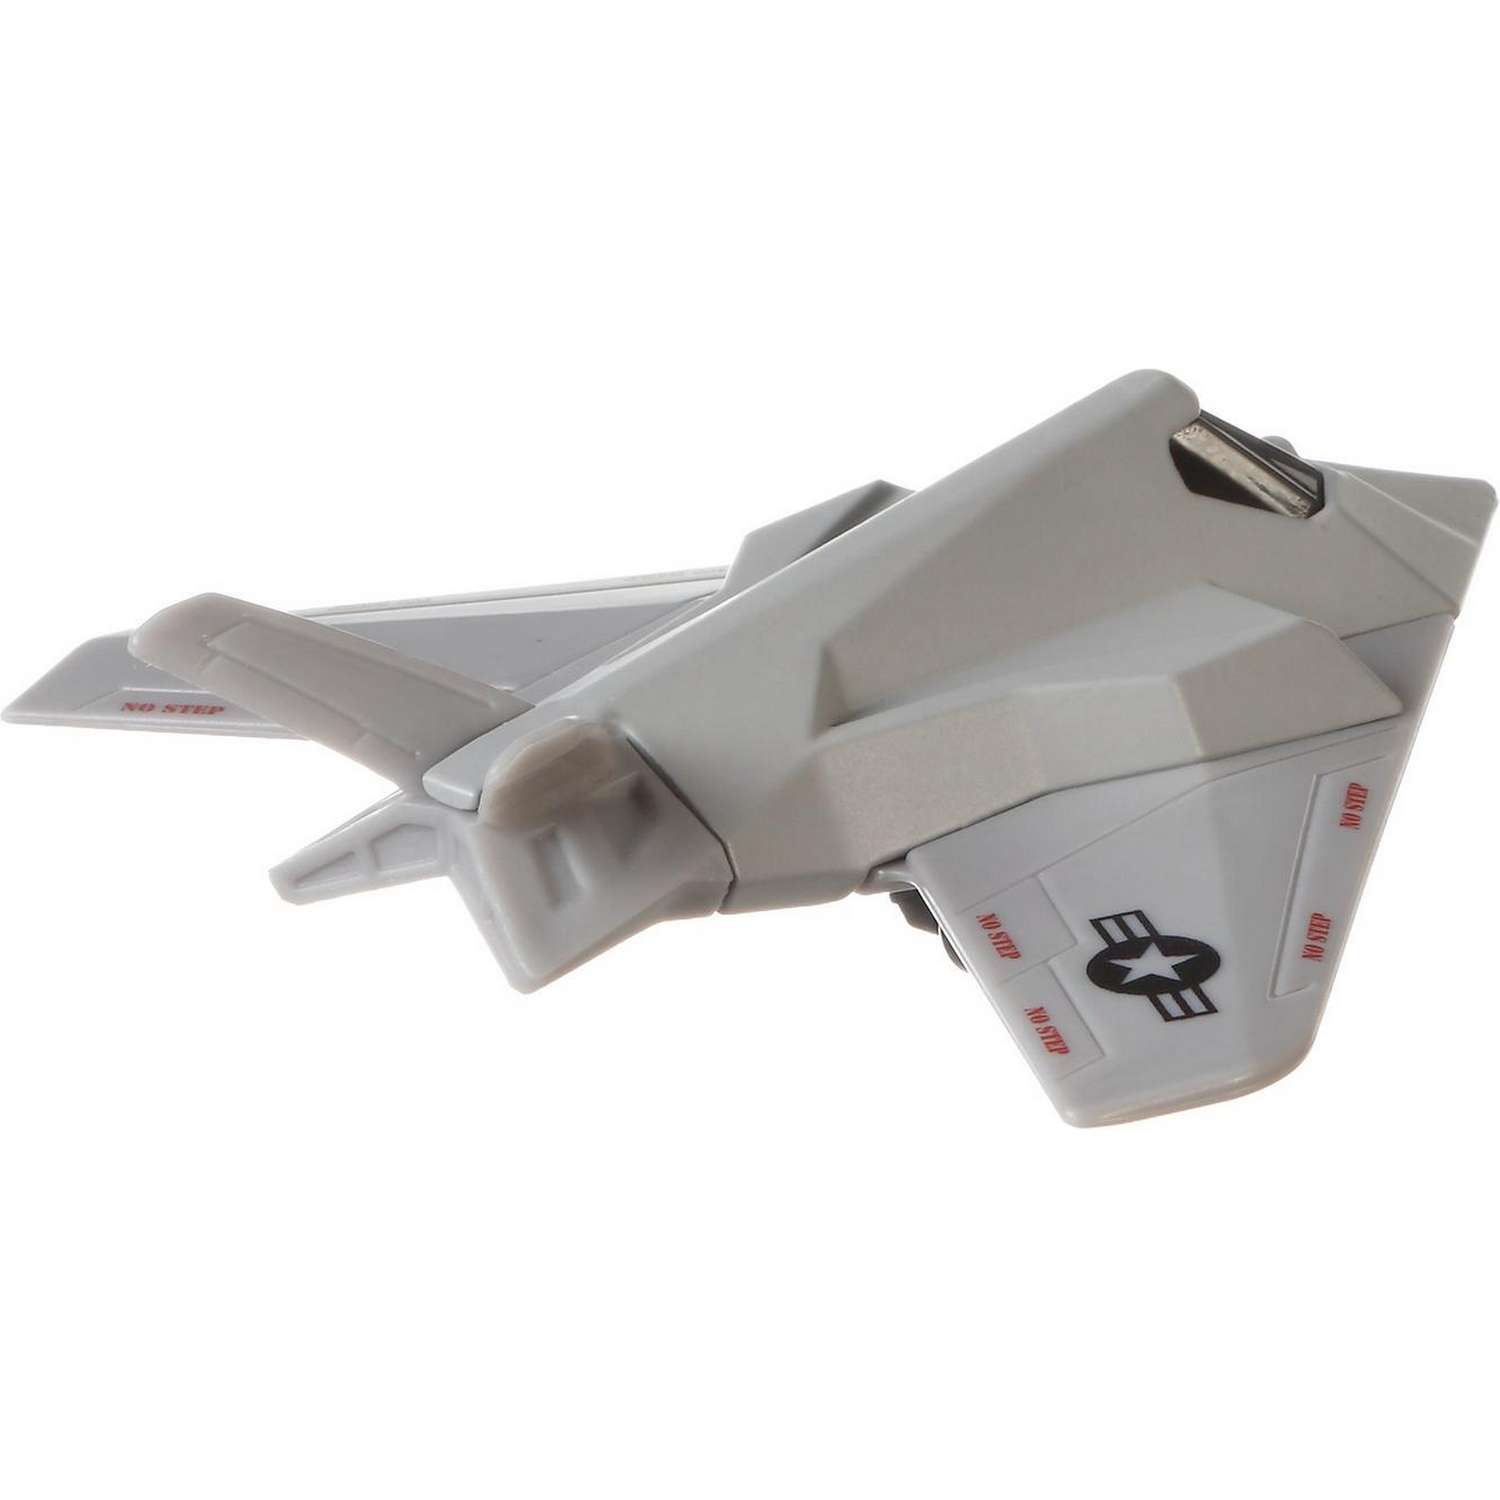 Игрушка Matchbox Транспорт воздушный Самолет Локхид Мартин F-117 Найтхок FKV42 68982 - фото 3